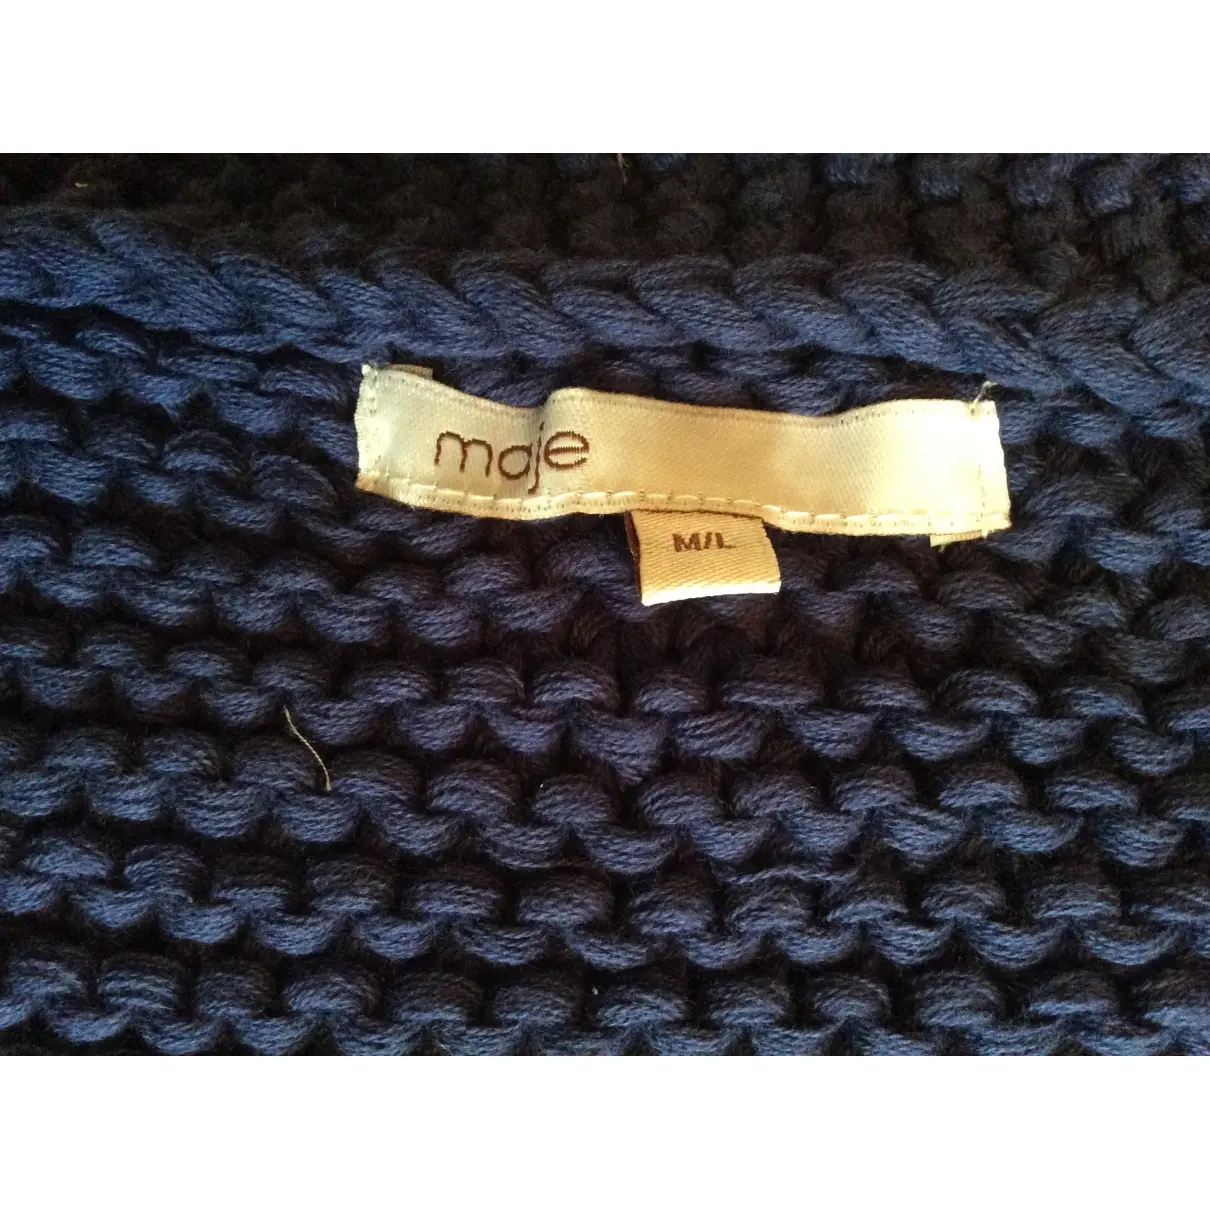 Buy Maje Knitwear online